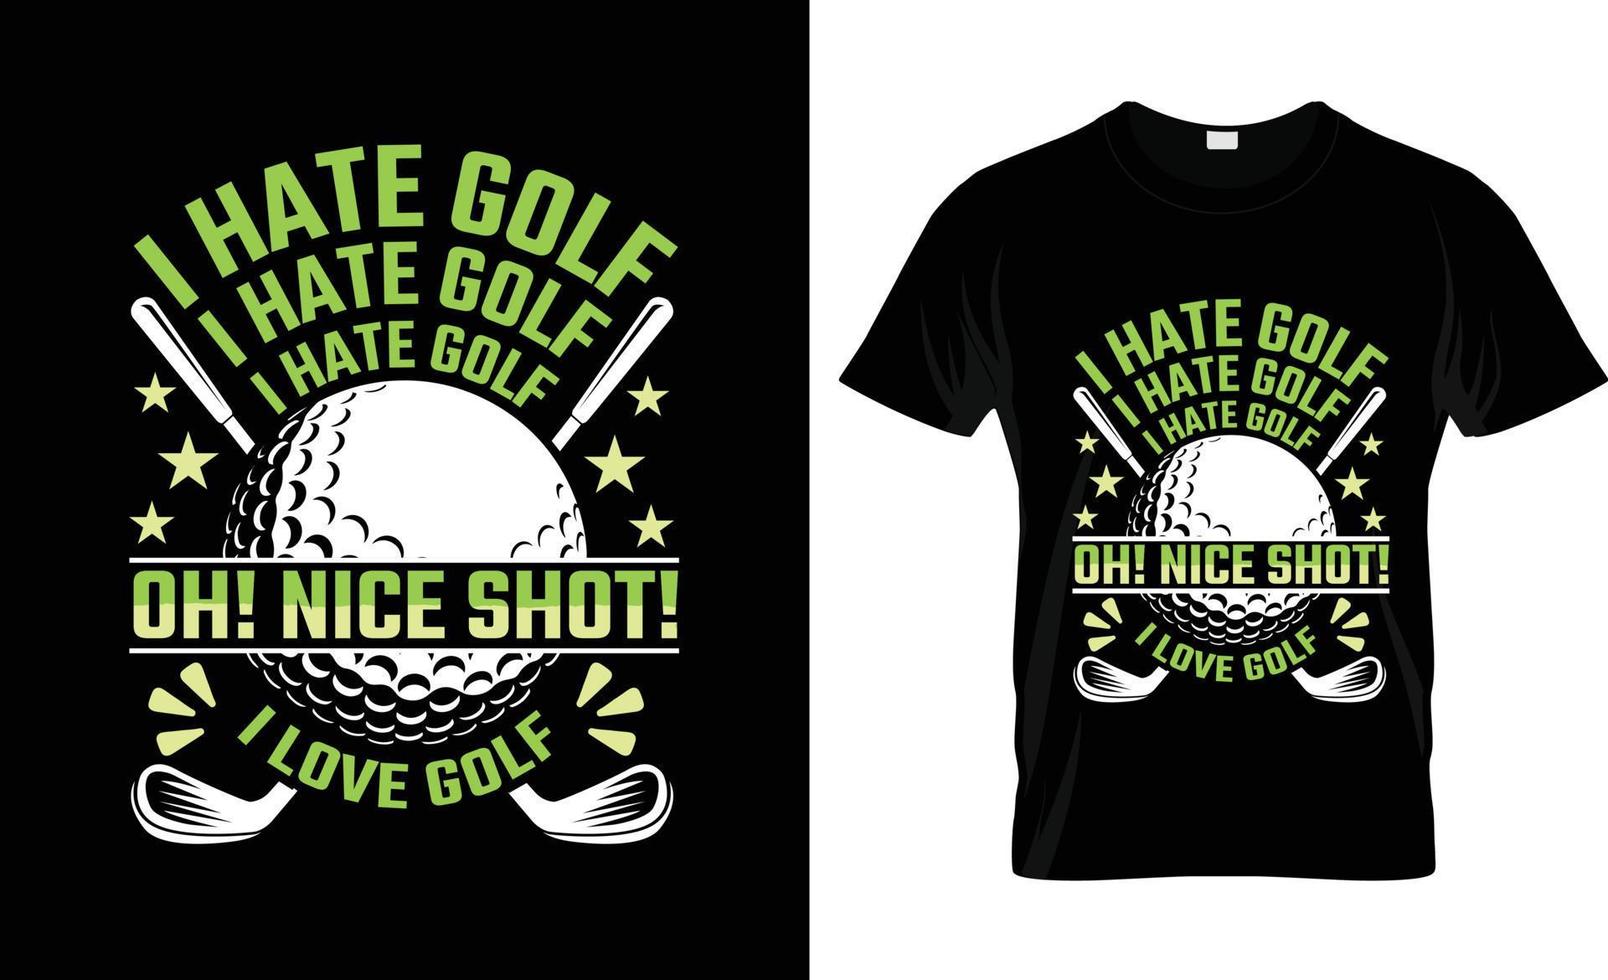 golf maglietta disegno, golf maglietta slogan e abbigliamento disegno, golf tipografia, golf vettore, golf illustrazione vettore